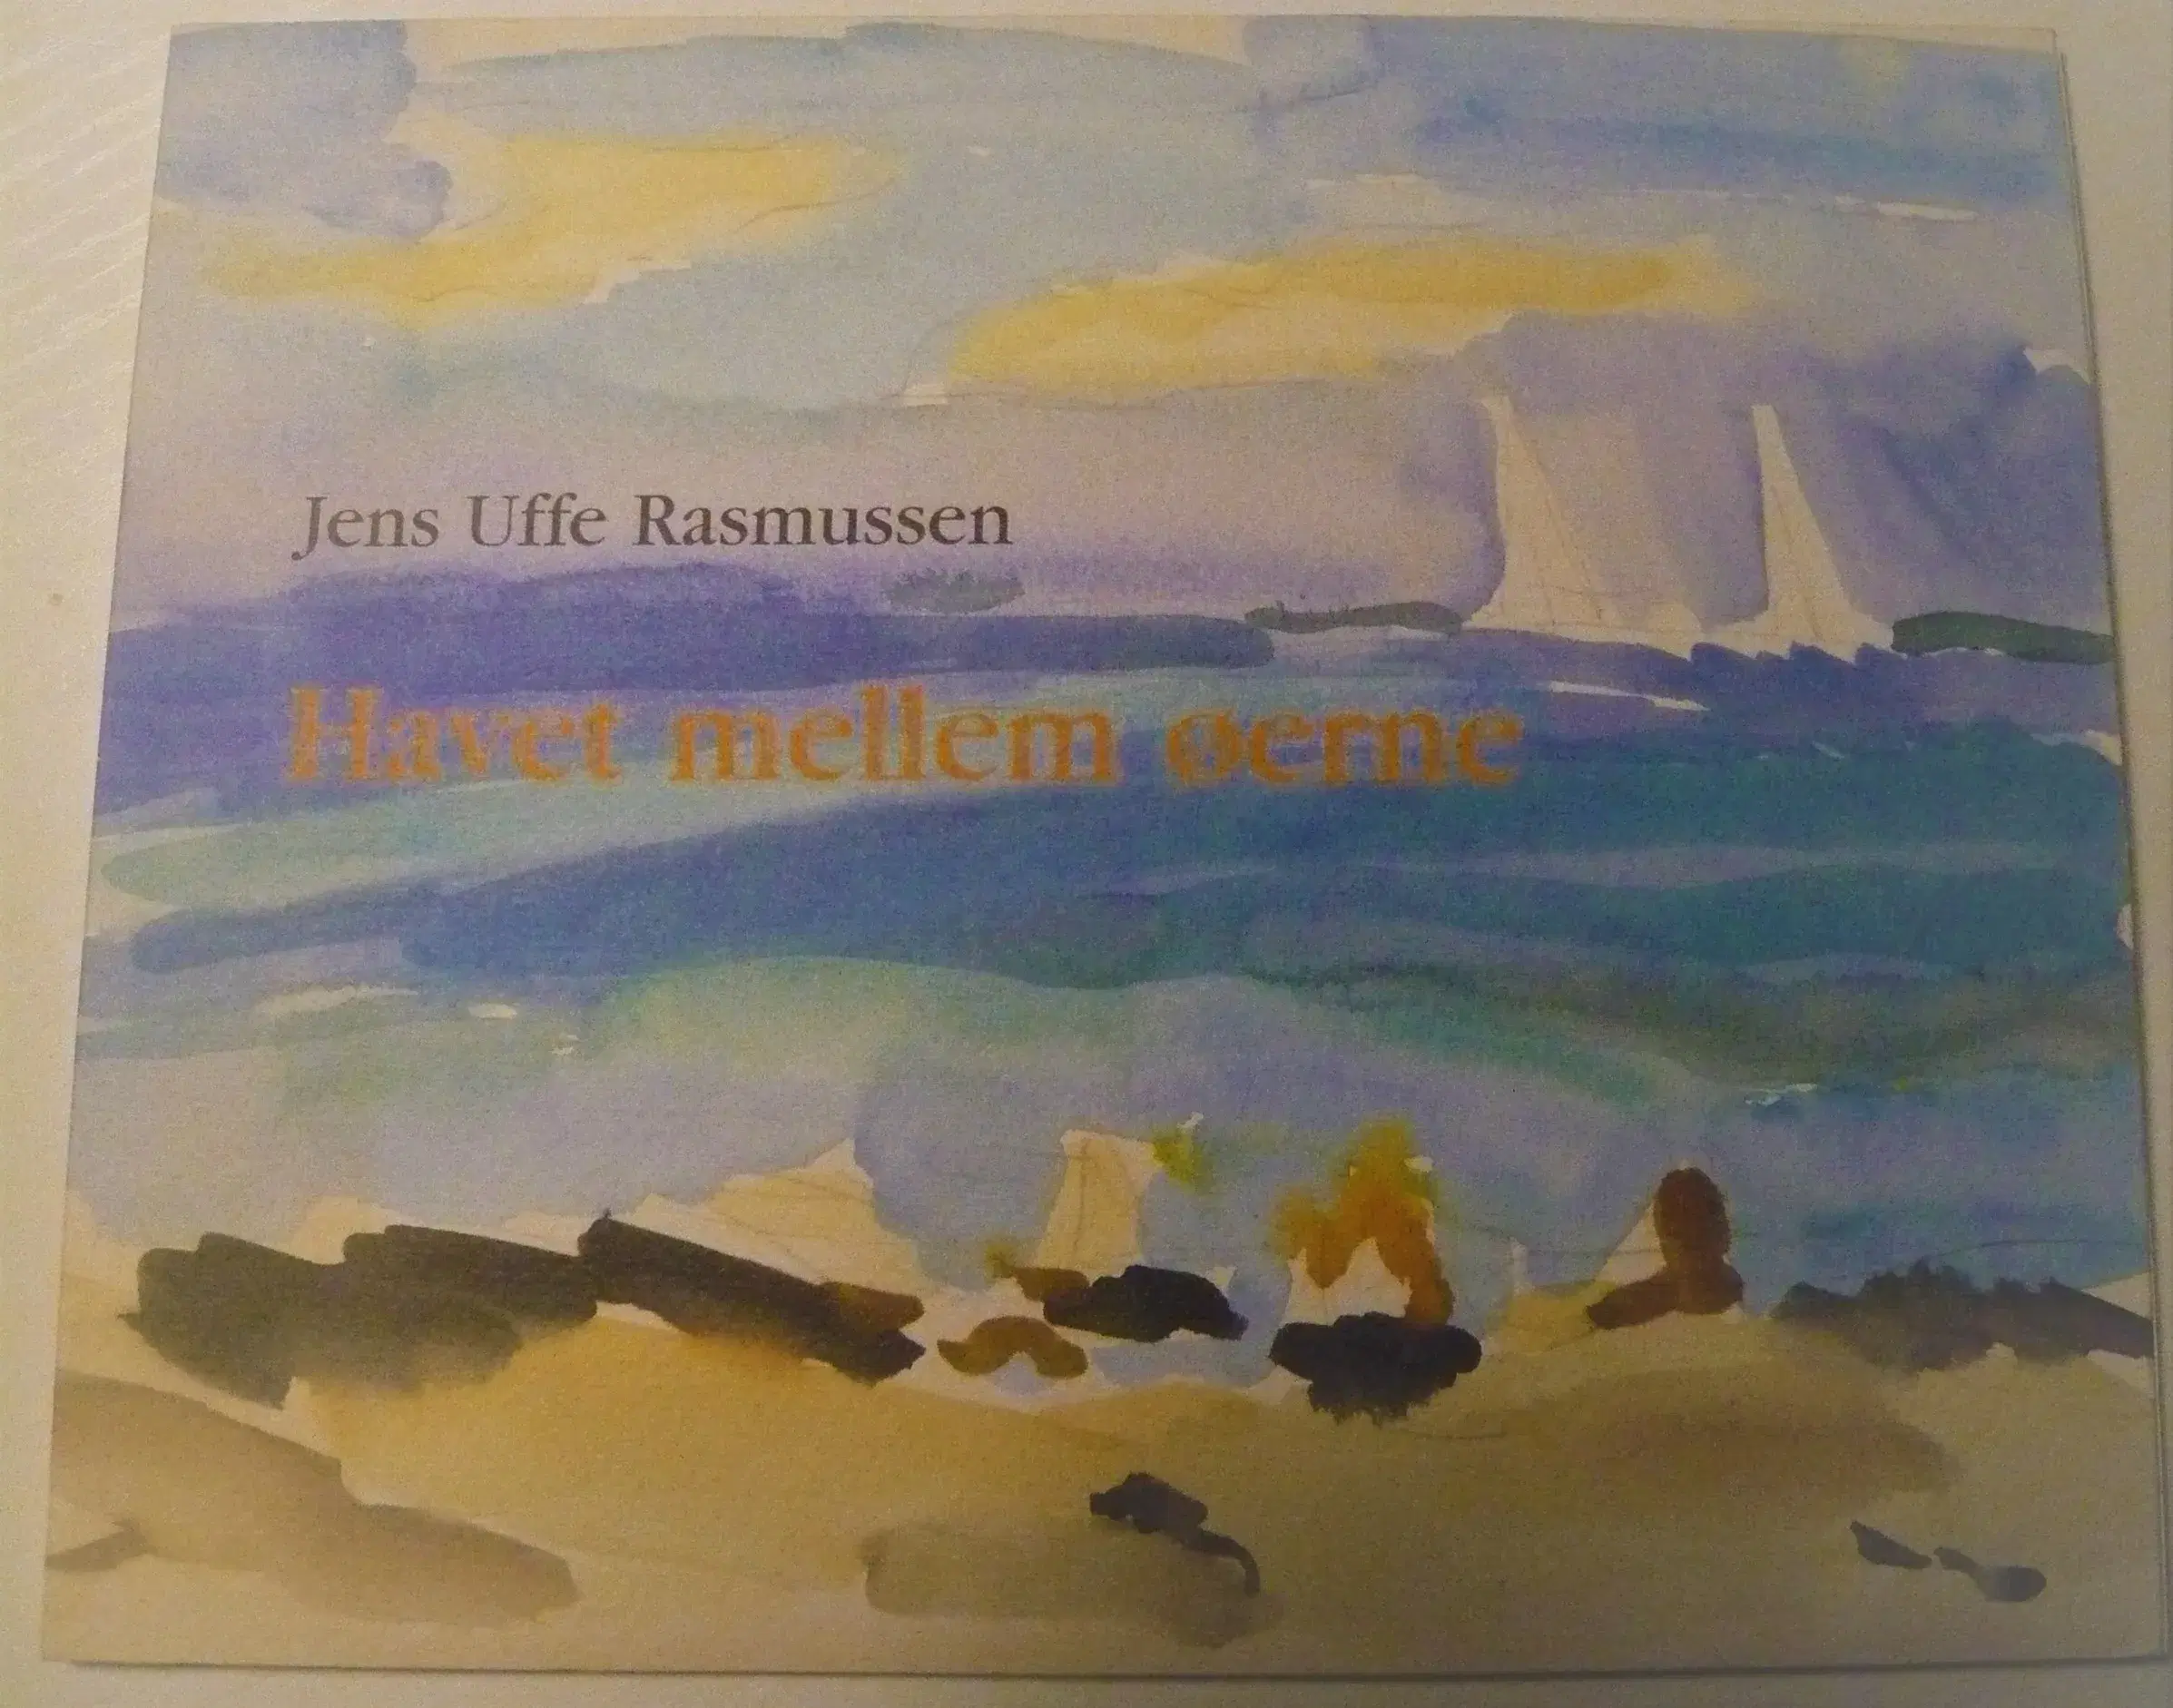 Havet mellem øerne - Jens Uffe Rasmussen